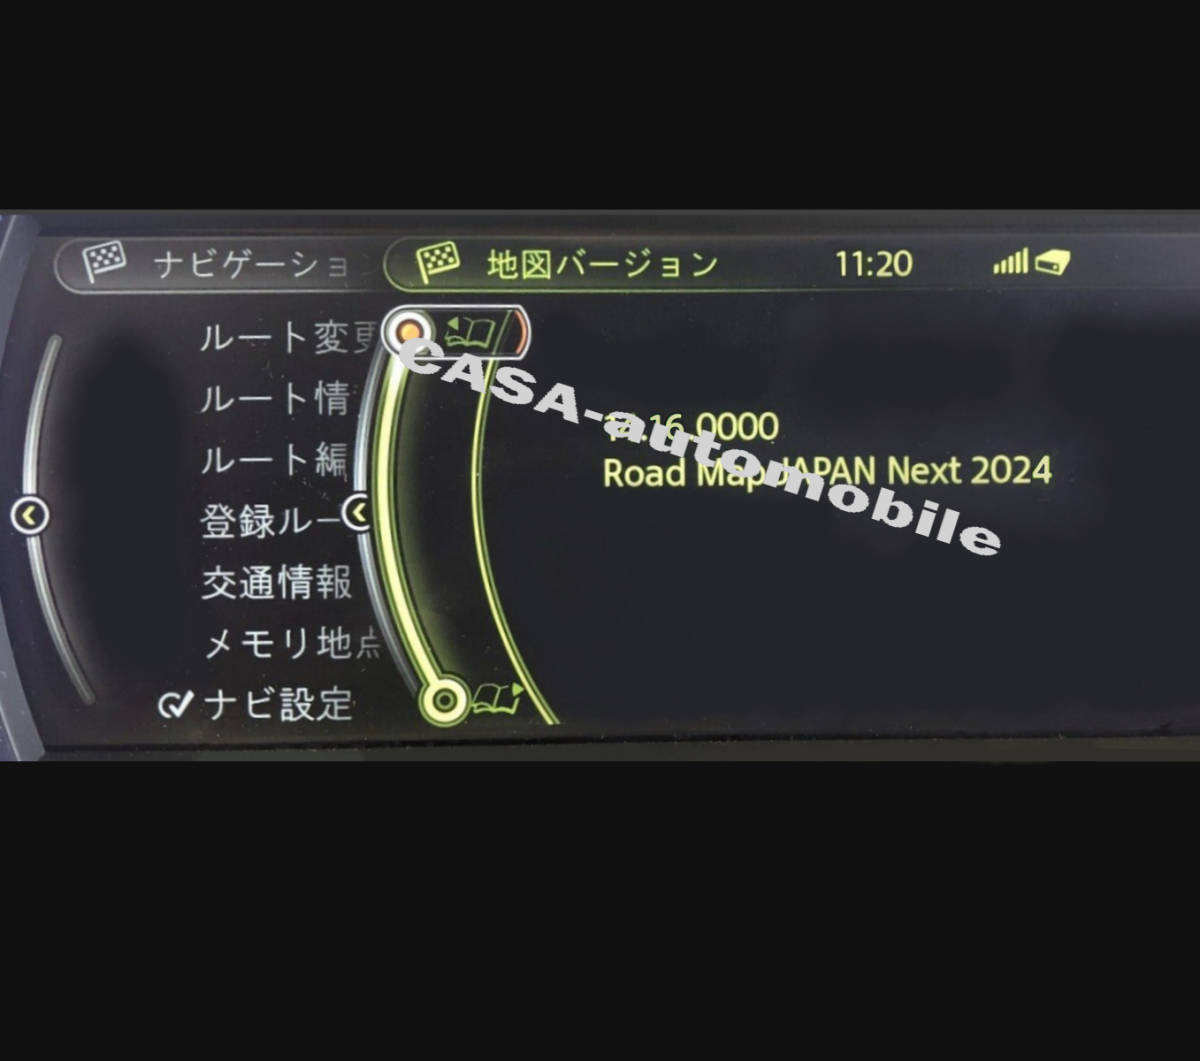 [ загрузка версия /FSC код есть ]BMW/Mini 2024 новейший версия карта обновление Road Map JAPAN NEXT(iDrive3 для ) карта выше te-to..